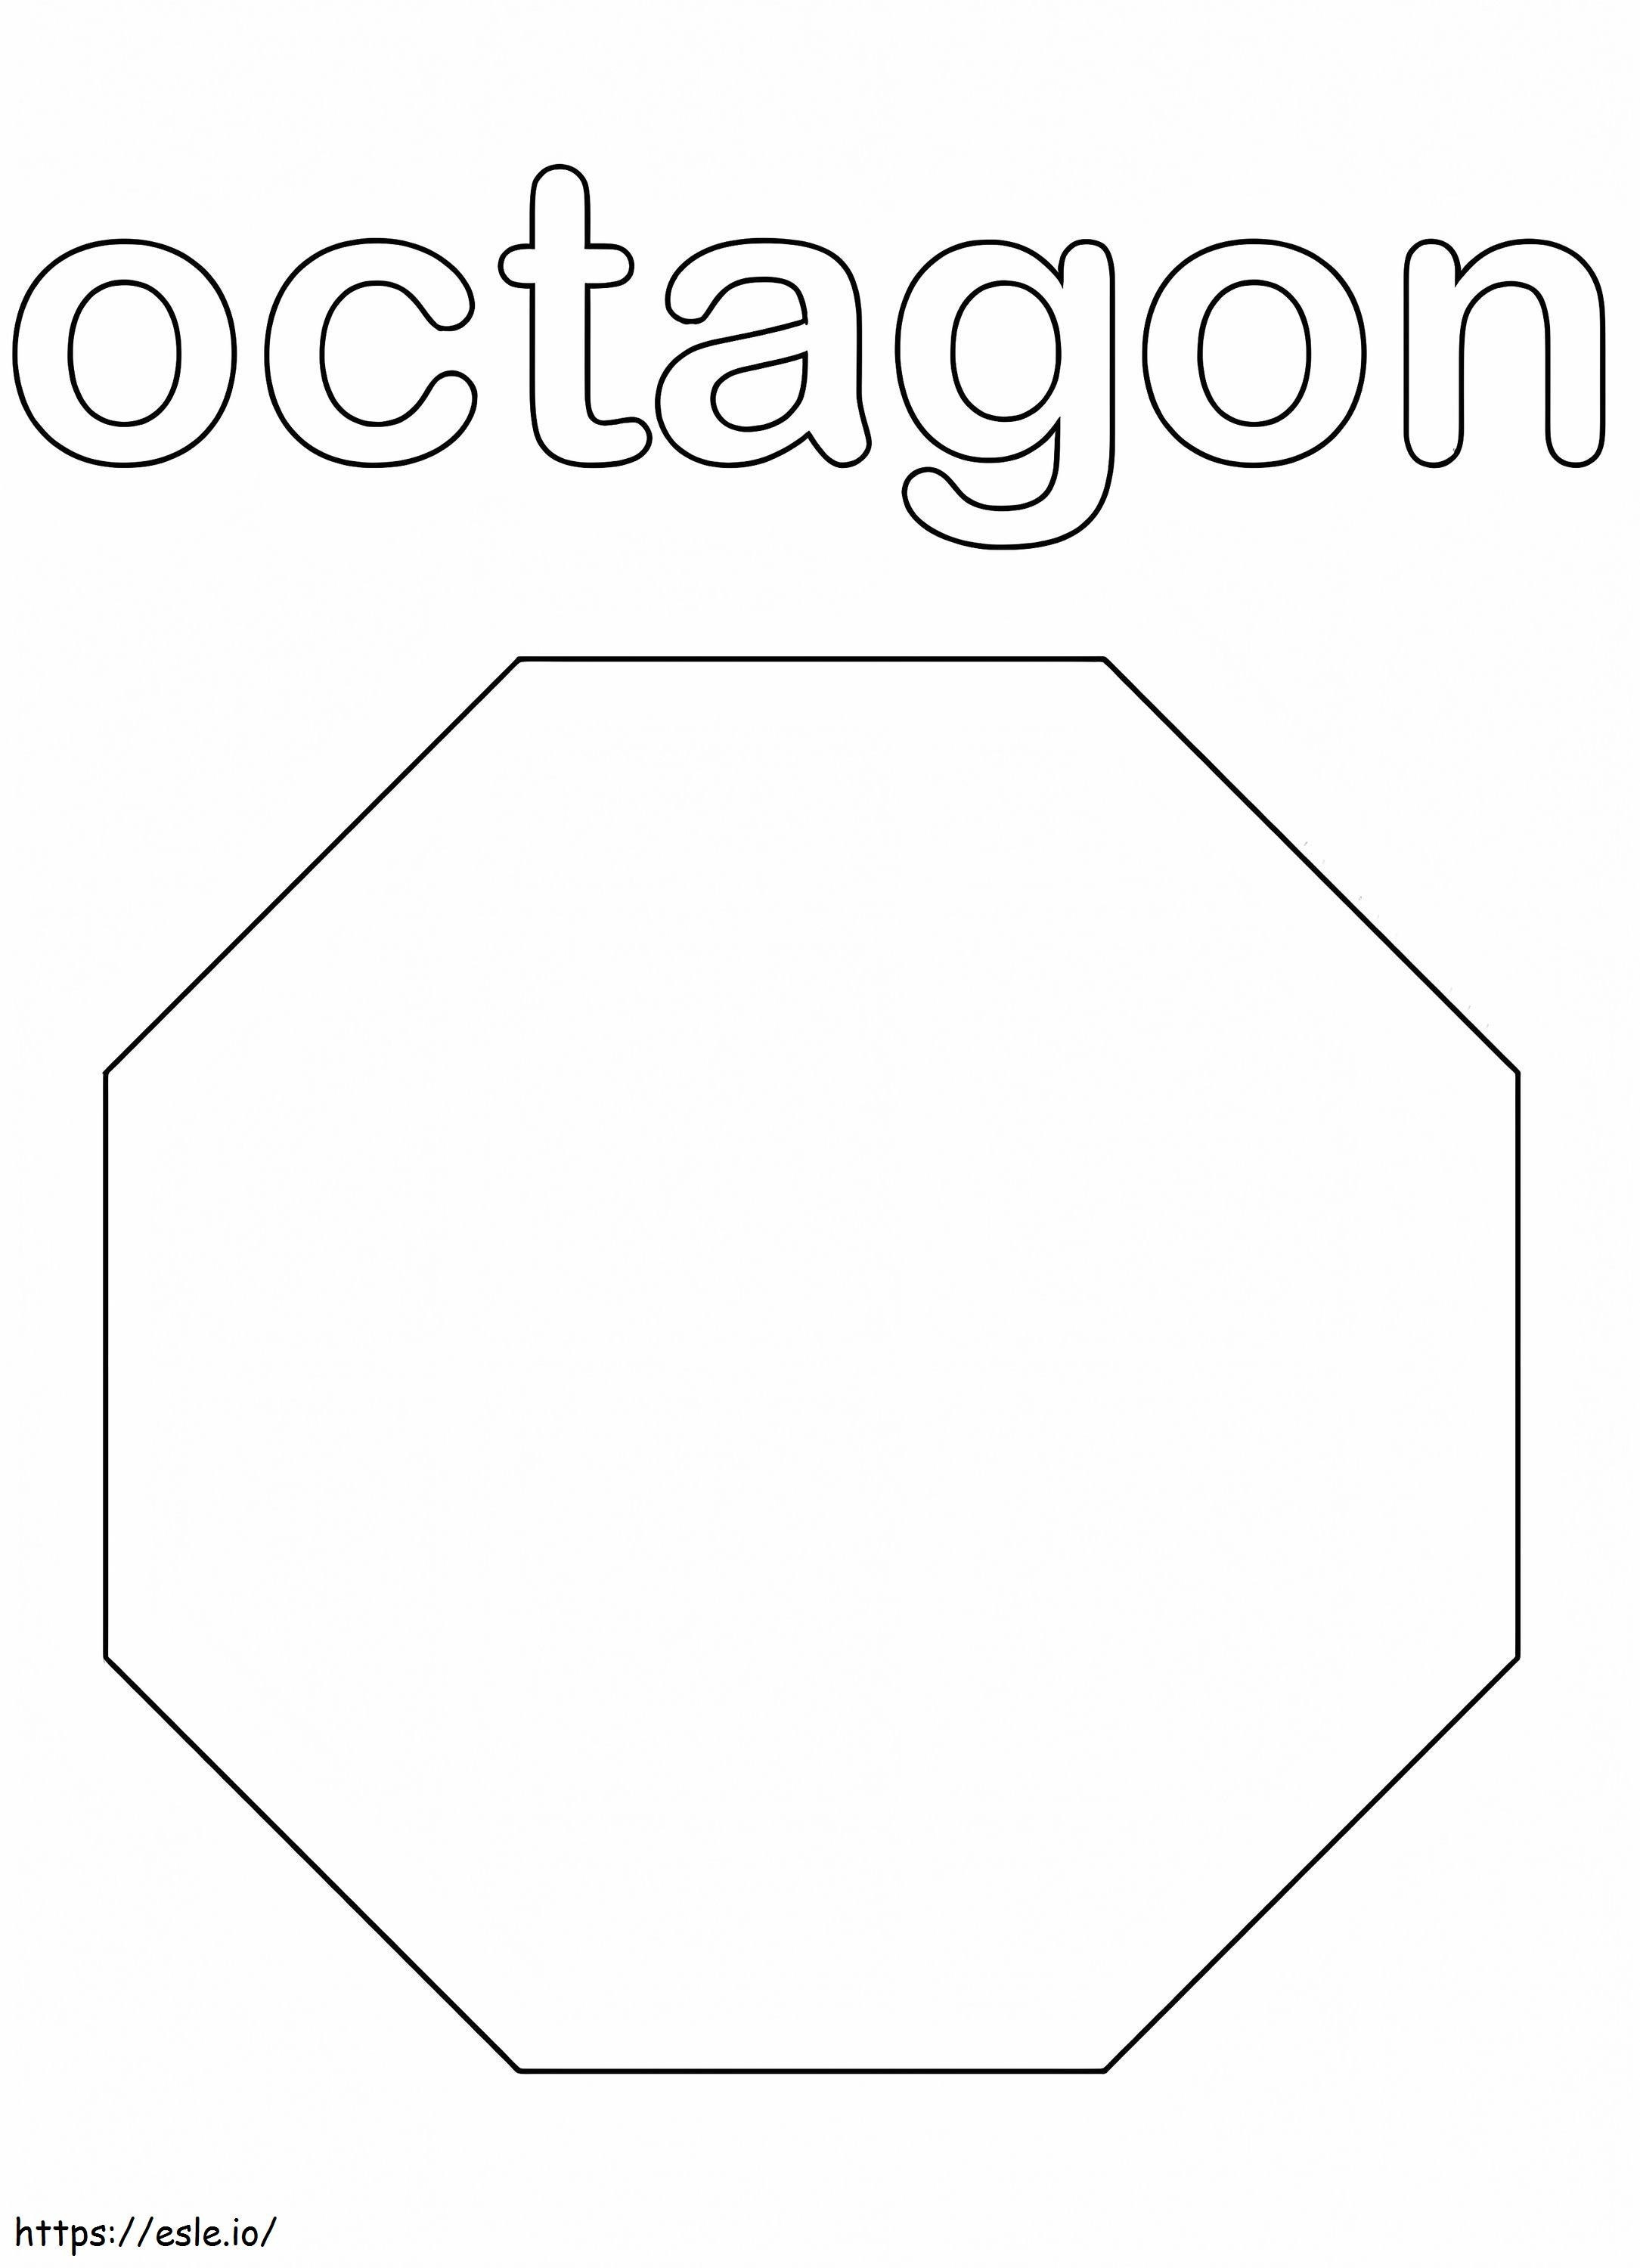 Coloriage Octogone à imprimer dessin